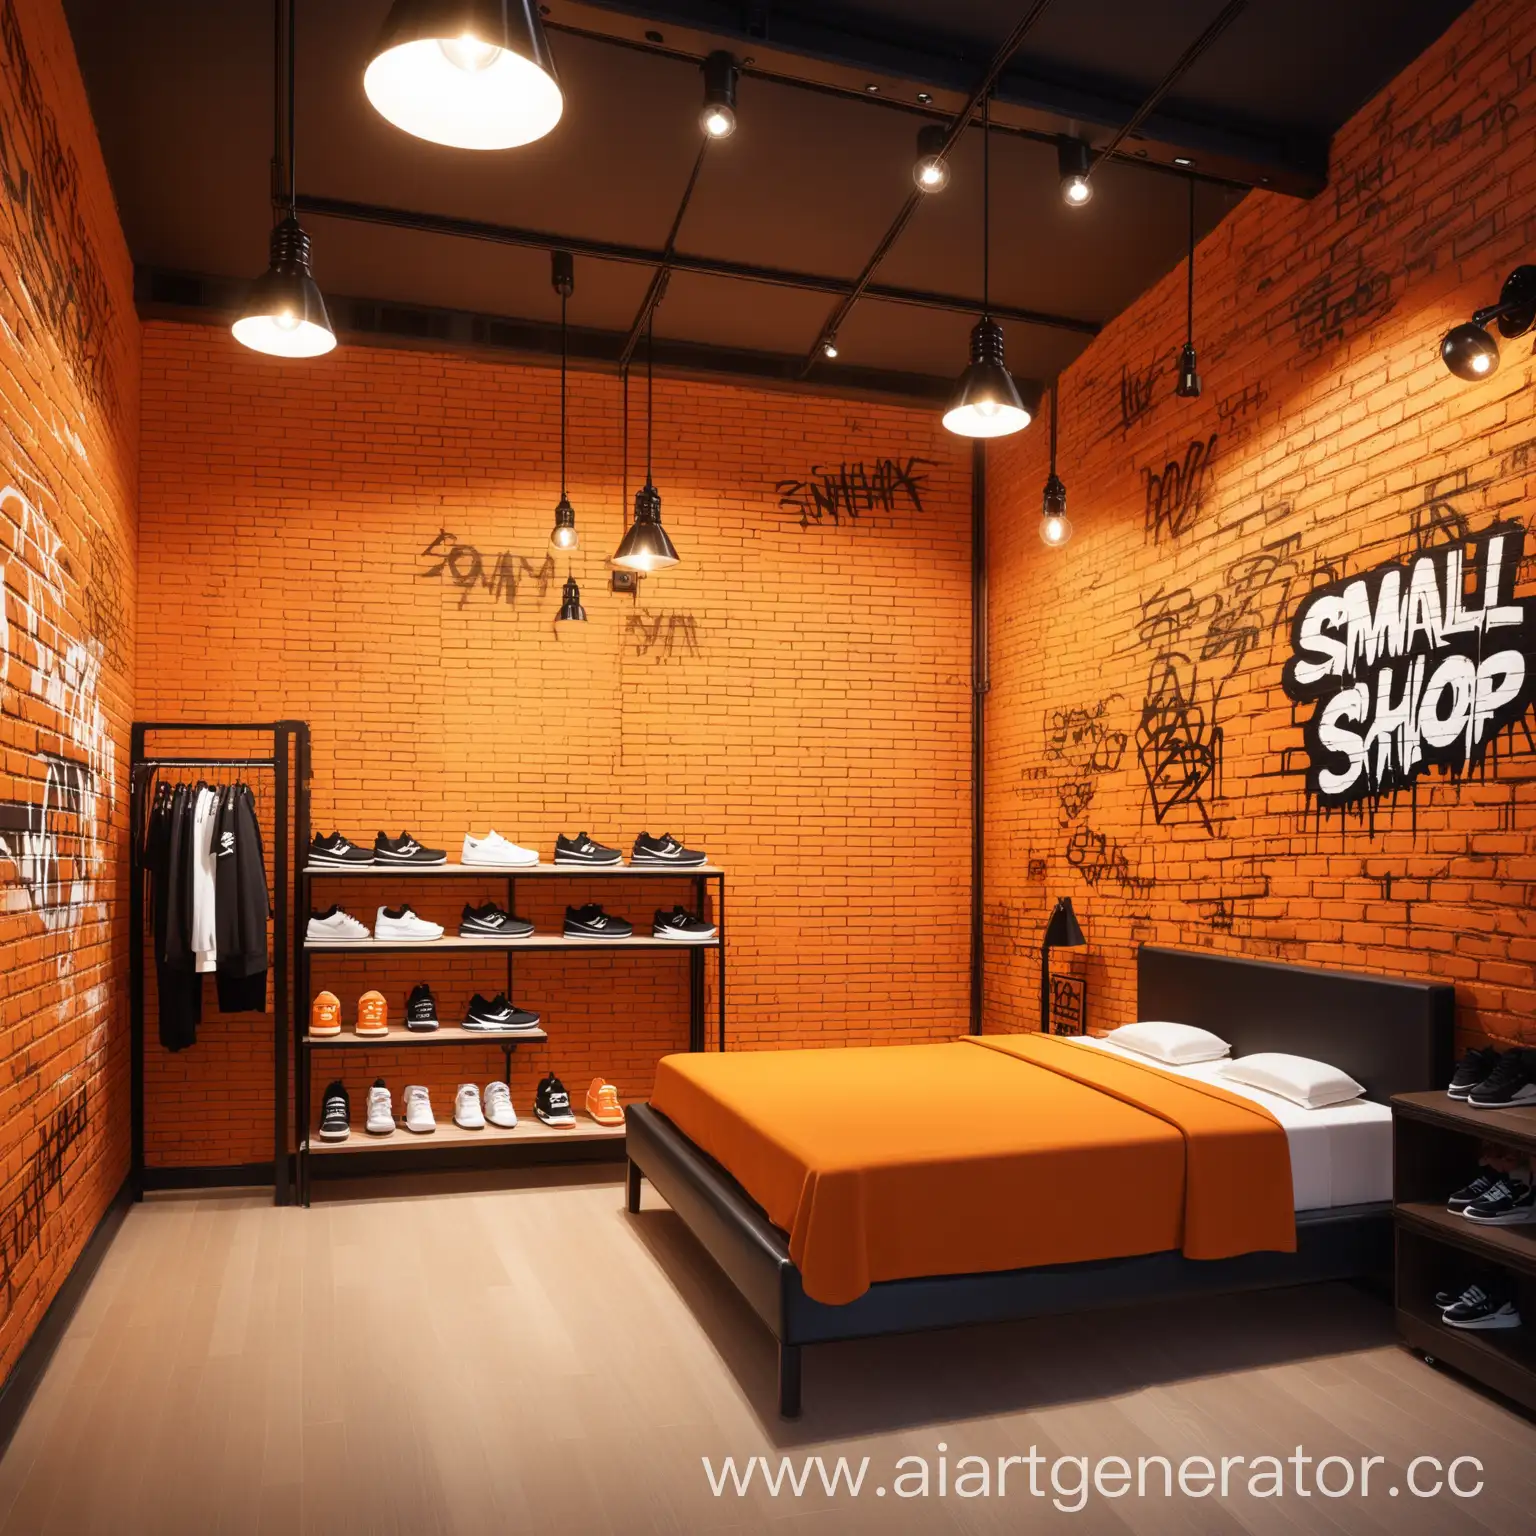 Небольшая комната, магазин кроссовок, ,светлое помещение, оранжевые тона, кирпичные стены, висящие лампы, одна стена с граффити хорошо заметное, уют,